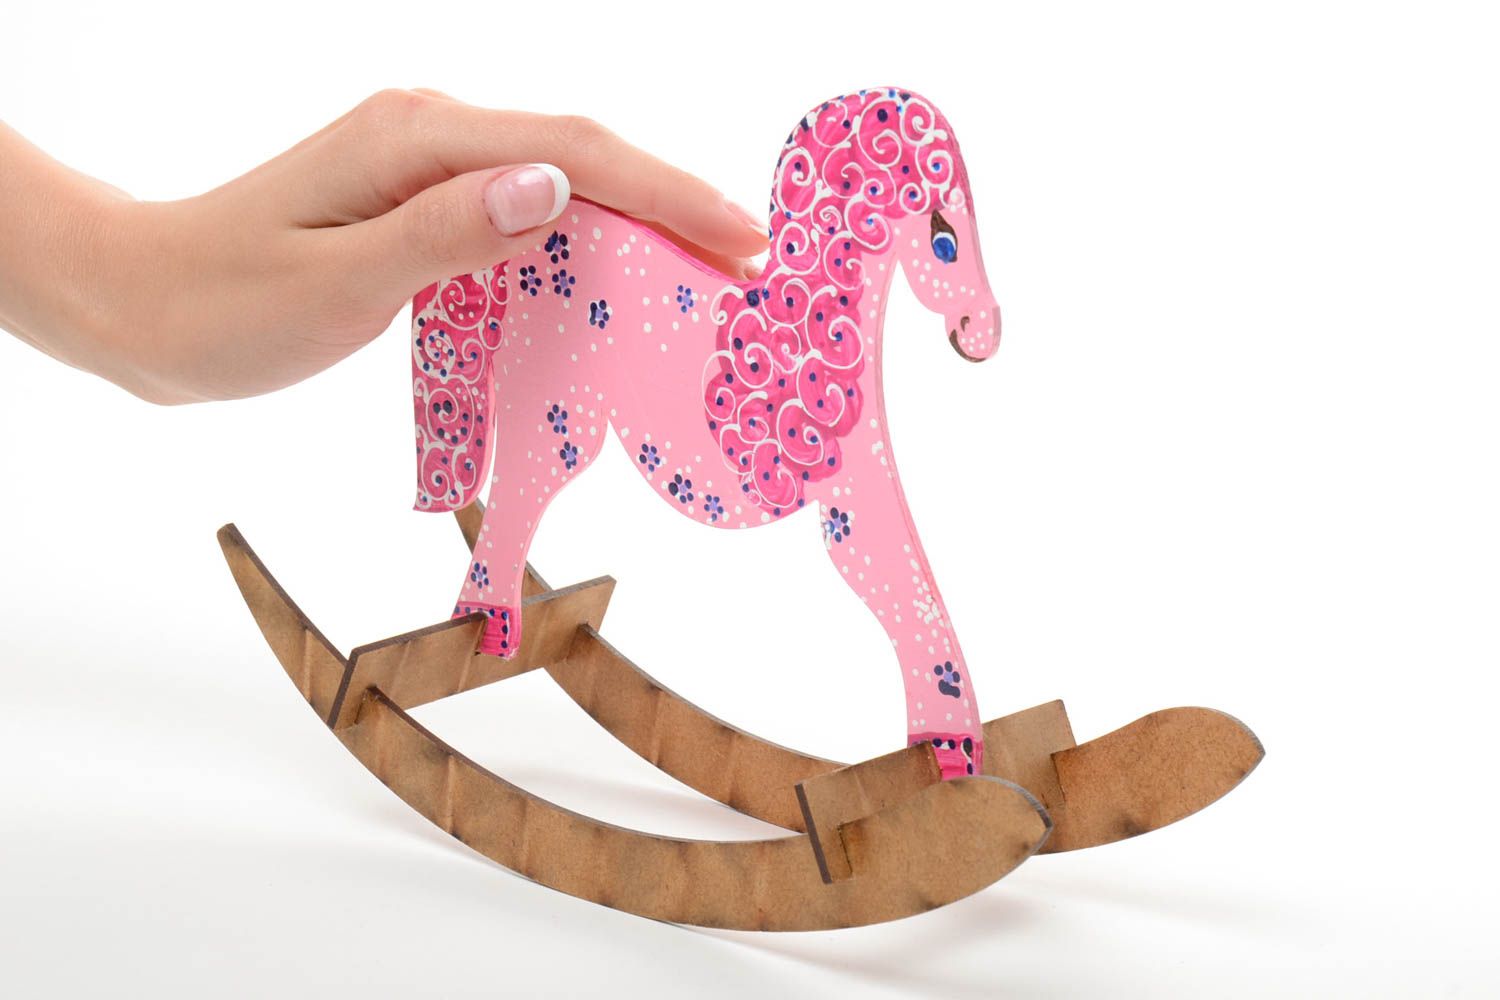 Игрушка лошадка ручной работы розового цвета качалка маленького размера детская фото 4